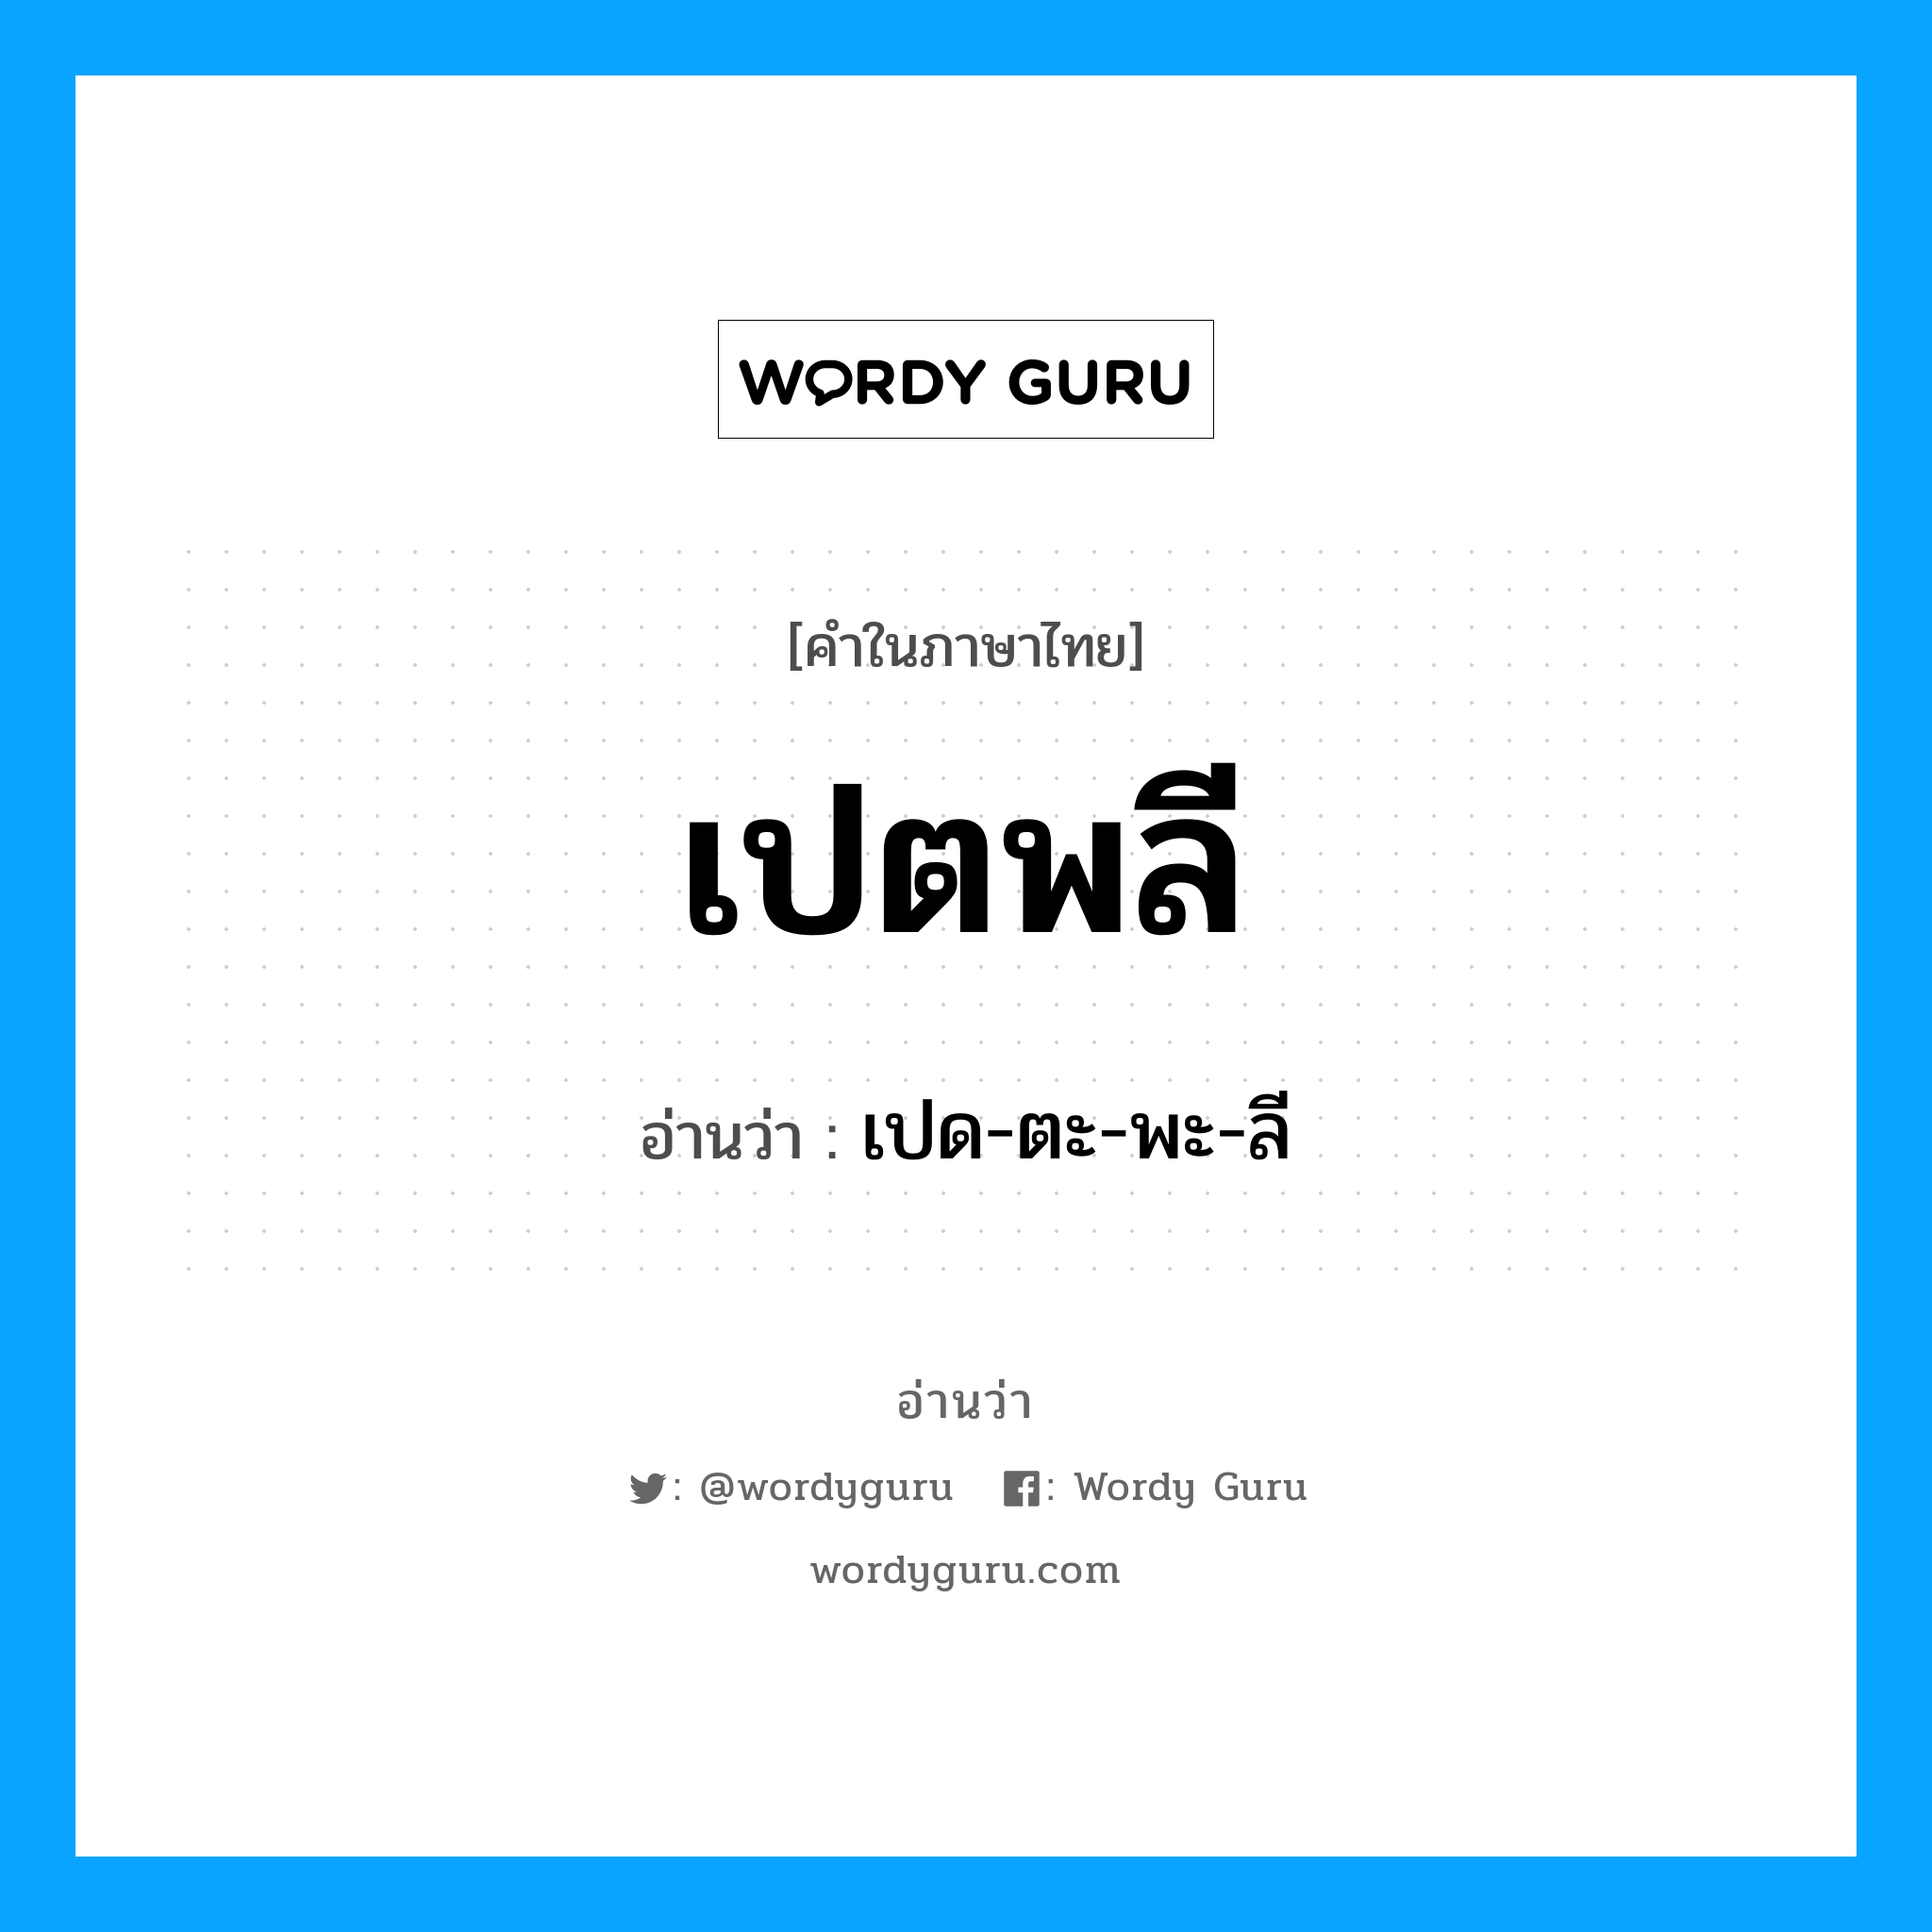 เปด-ตะ-พะ-ลี เป็นคำอ่านของคำไหน?, คำในภาษาไทย เปด-ตะ-พะ-ลี อ่านว่า เปตพลี